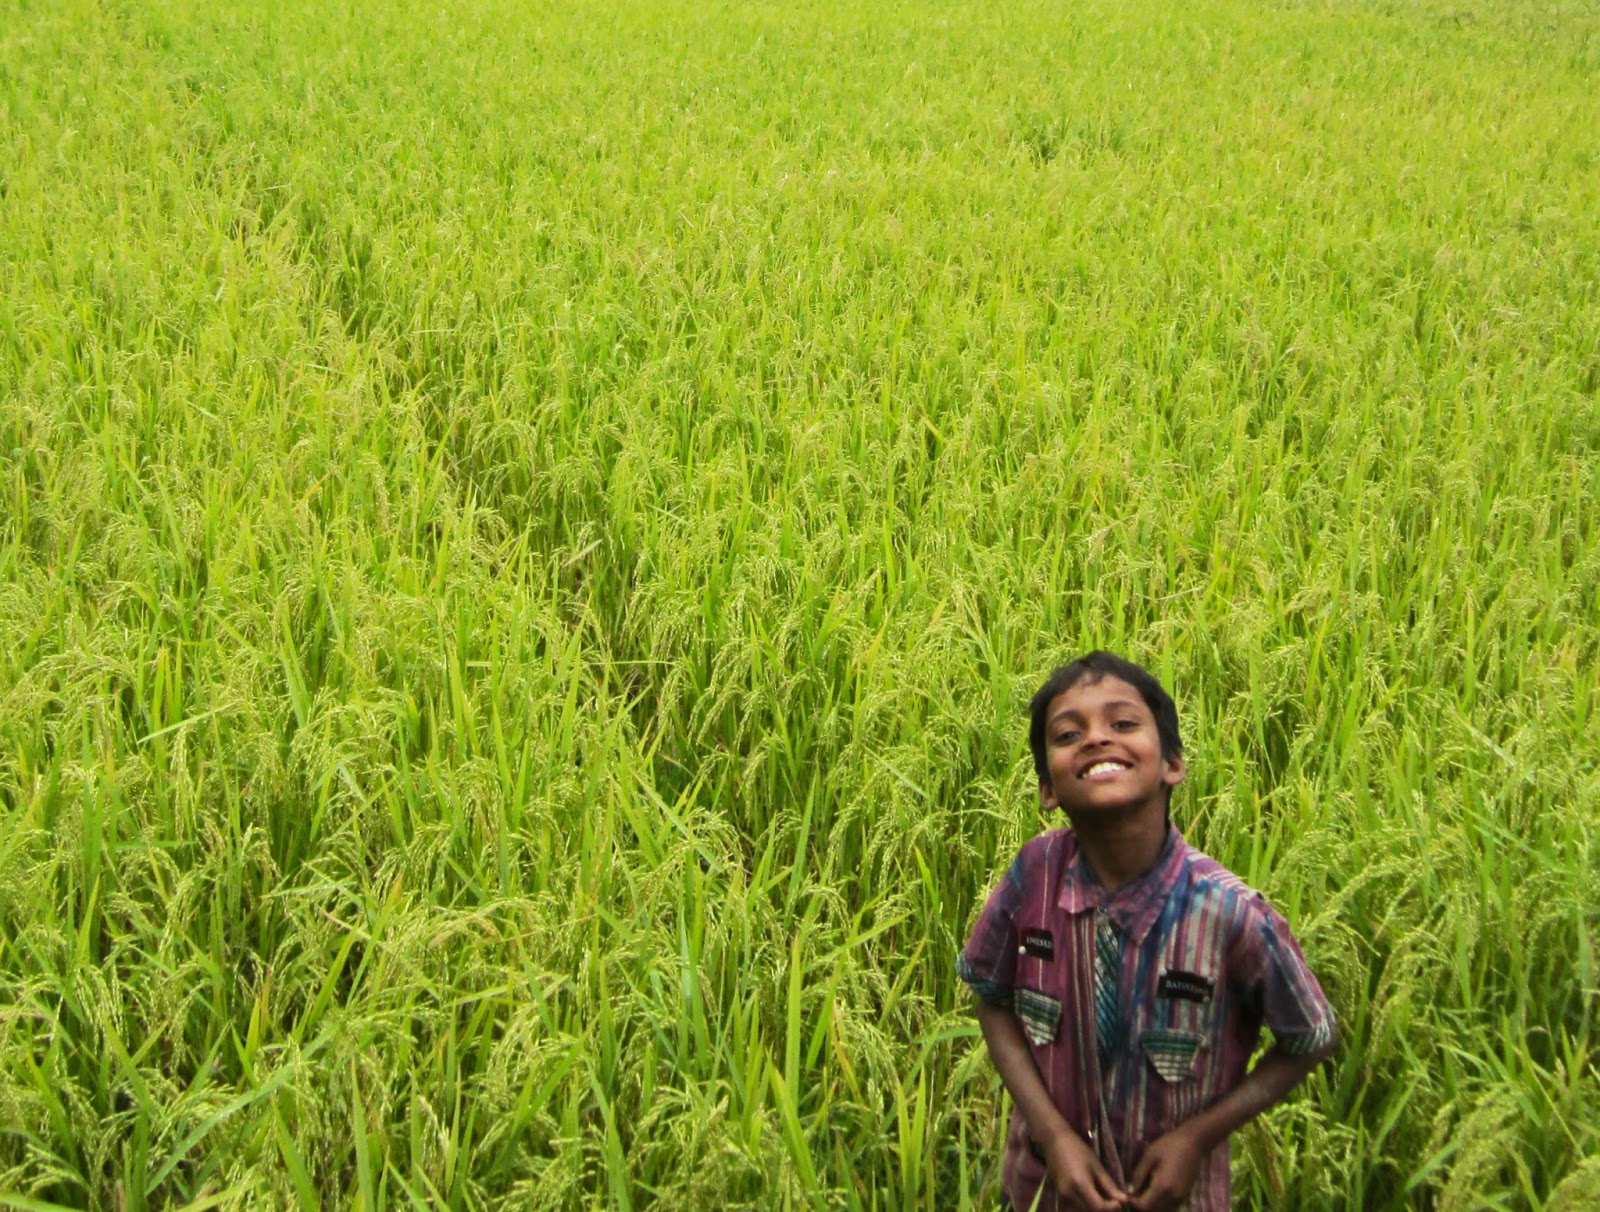 bangladesch tapete,ernte,feld,landwirtschaft,gras,reisfeld